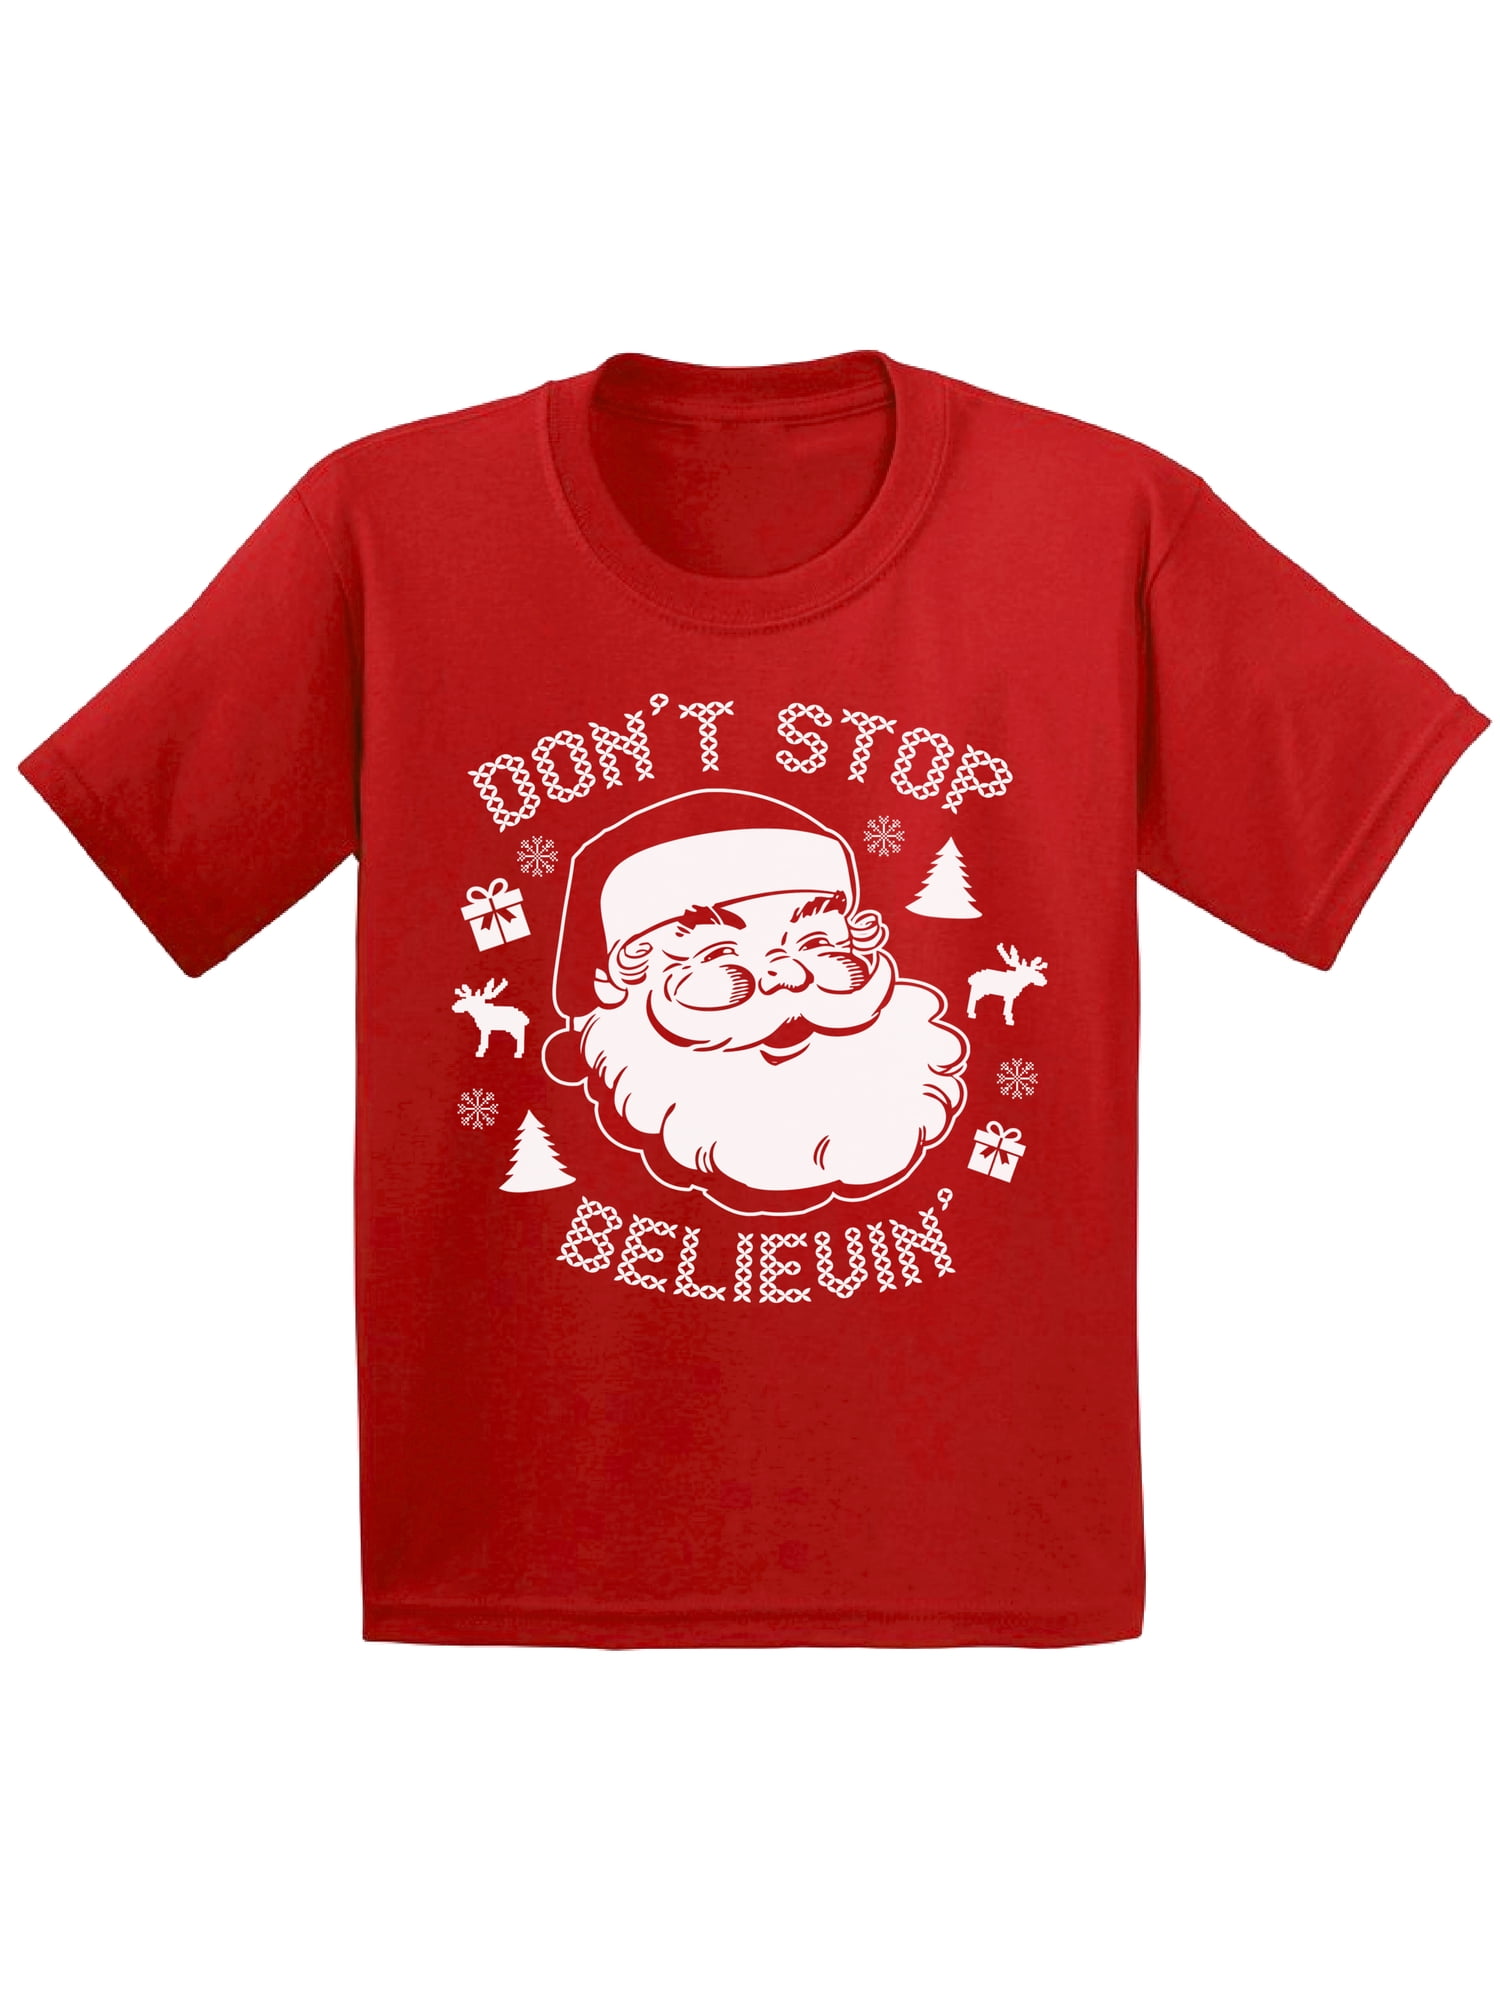 Toddler Santa Shirt Kleding Jongenskleding Tops & T-shirts T-shirts T-shirts met print Toddler Christmas Shirt 